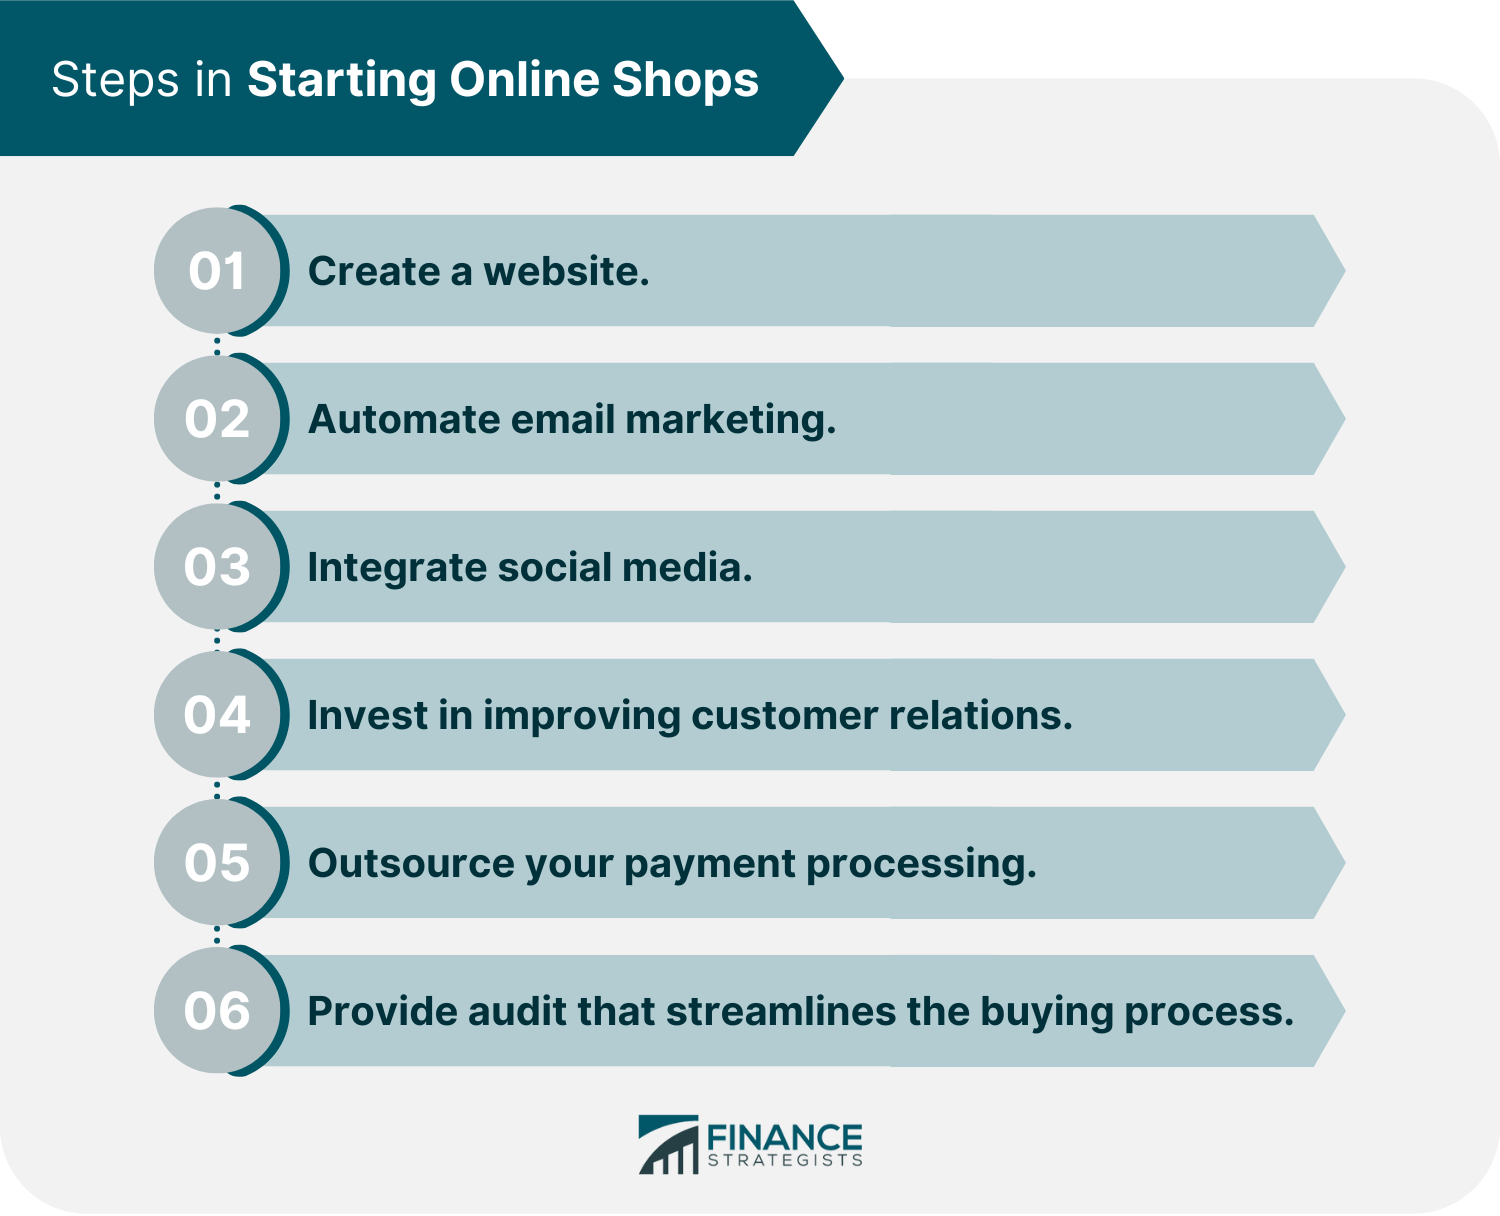 Steps in Starting Online Shops